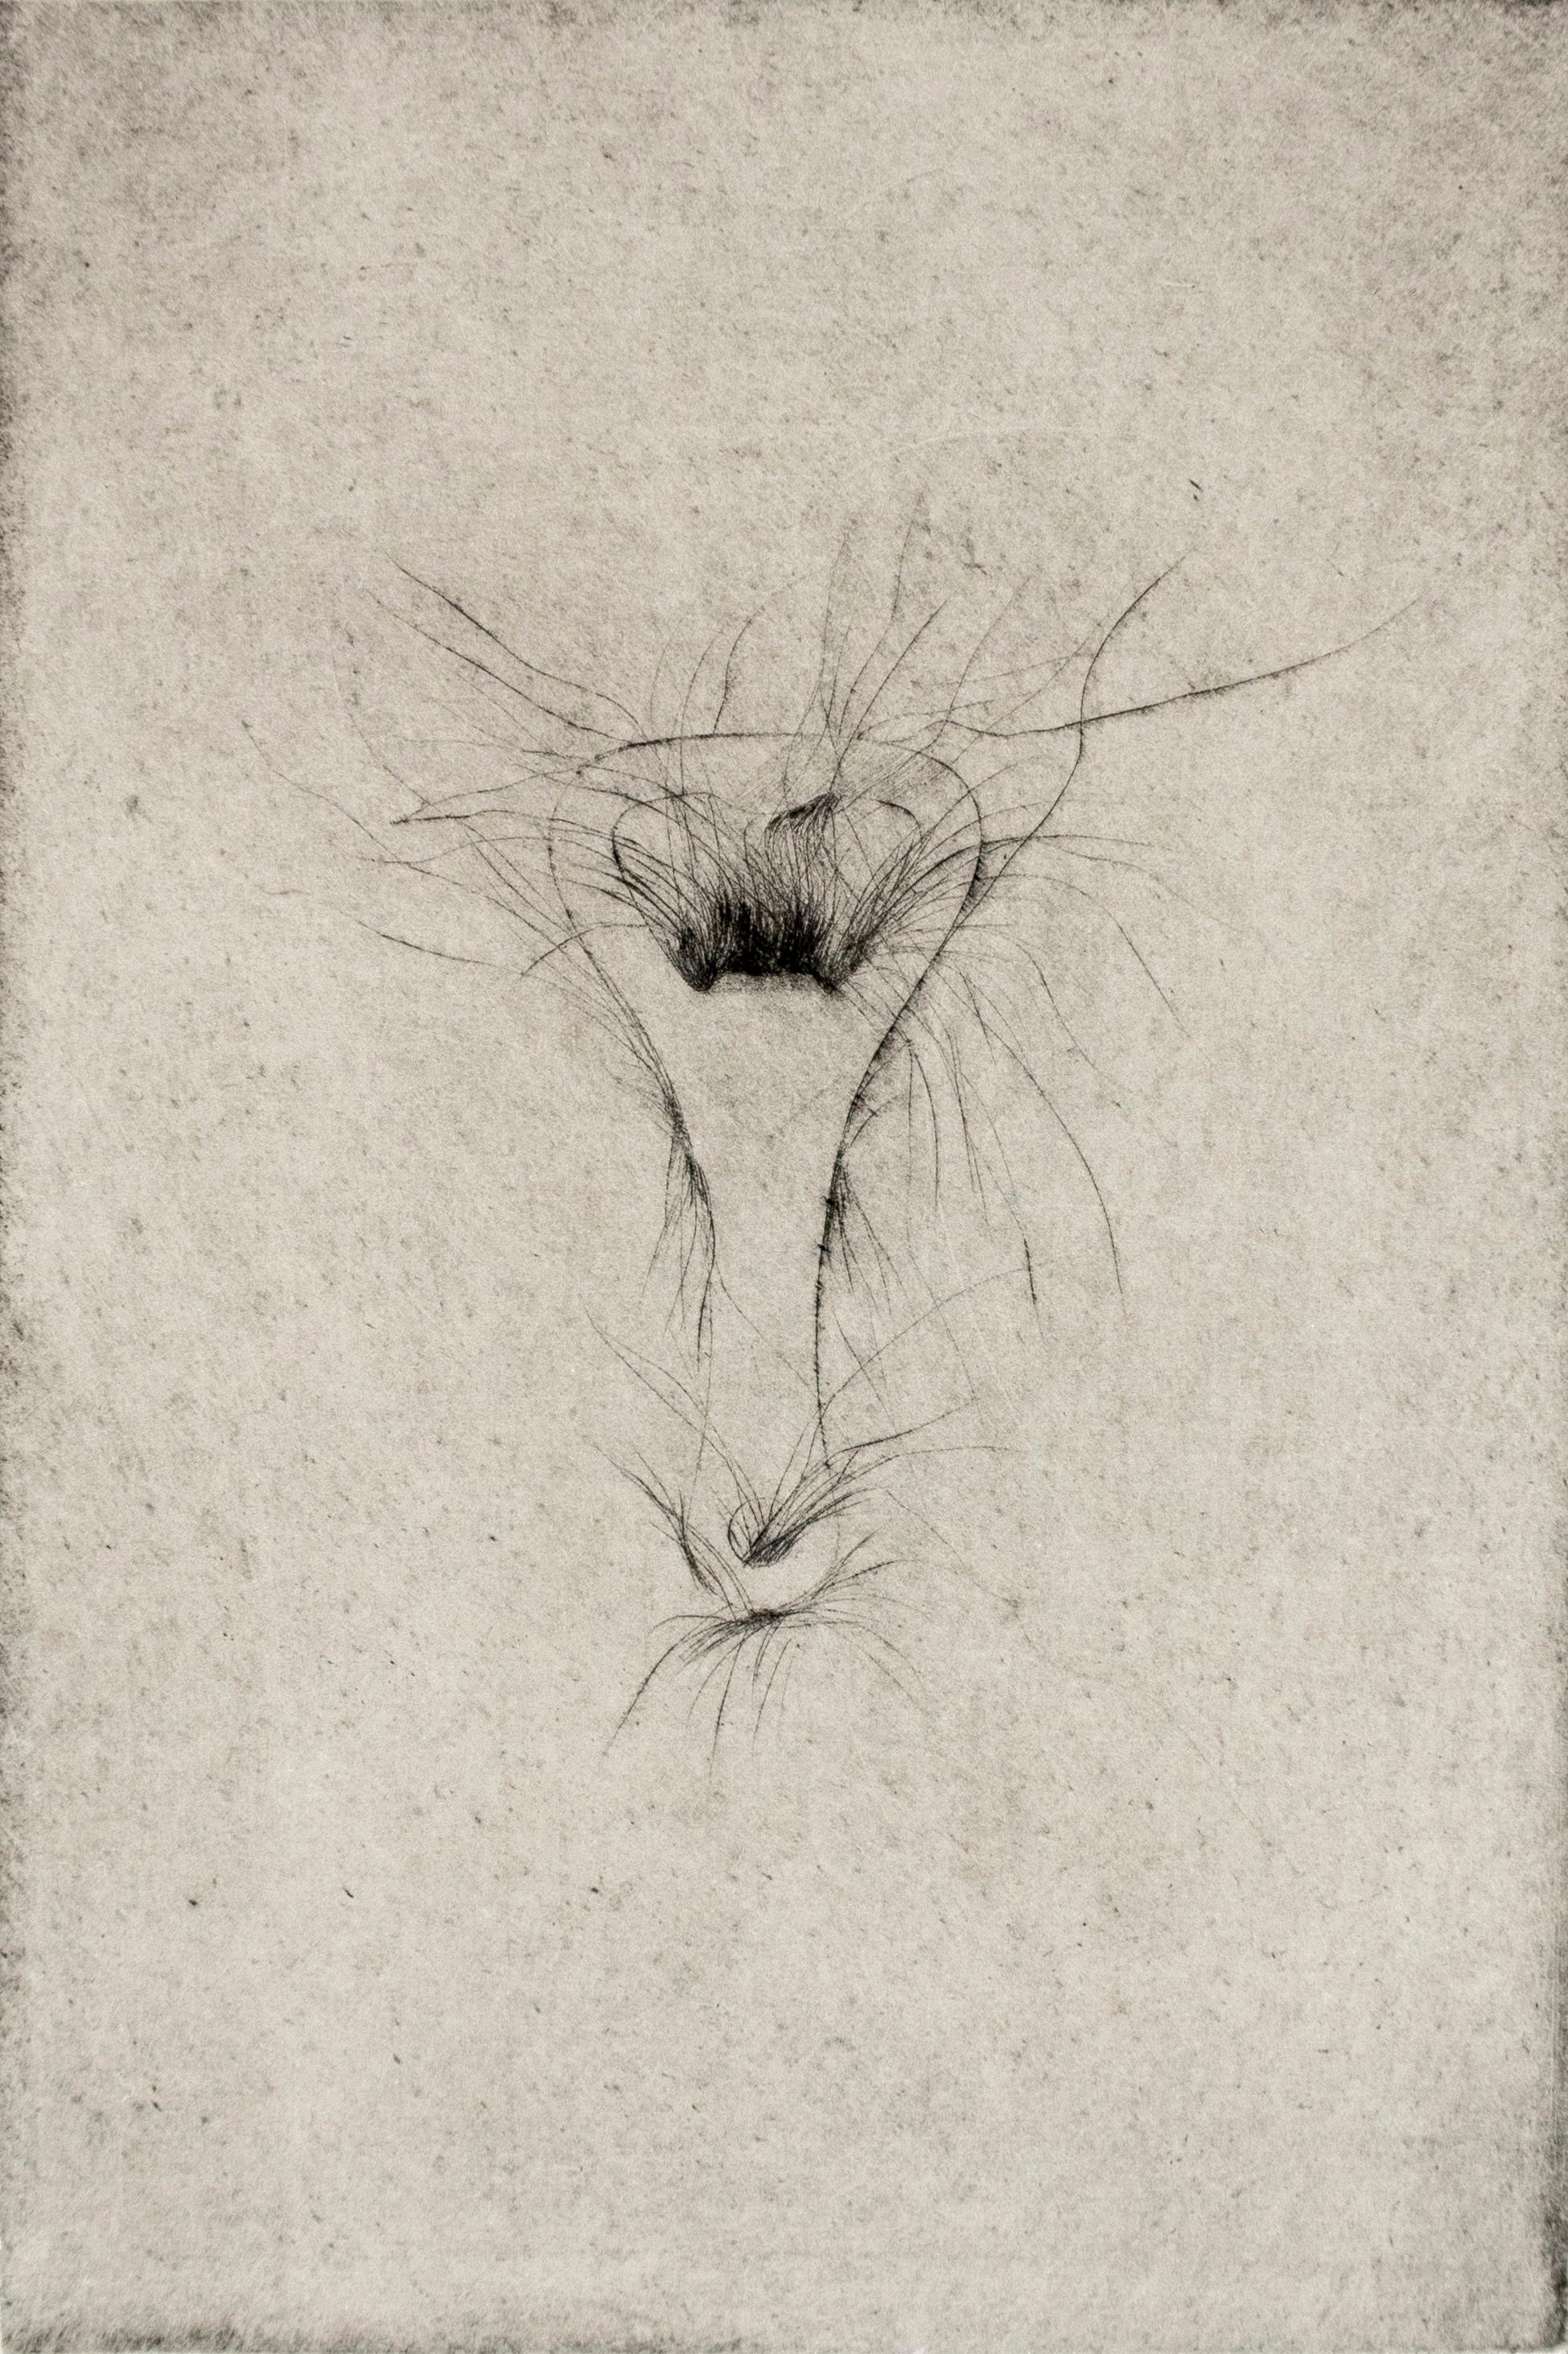 Jim Dine zeichnete die Platte für dieses Bild im gleichen Zeitraum wie sein Portfolio mit Kaltnadelradierungen "Thirty Bones of My Body" von 1972. Das Crisbrook-Papier (76,2 x 56 cm) und die Plattengröße (23 x 15 cm) sind identisch. Diese